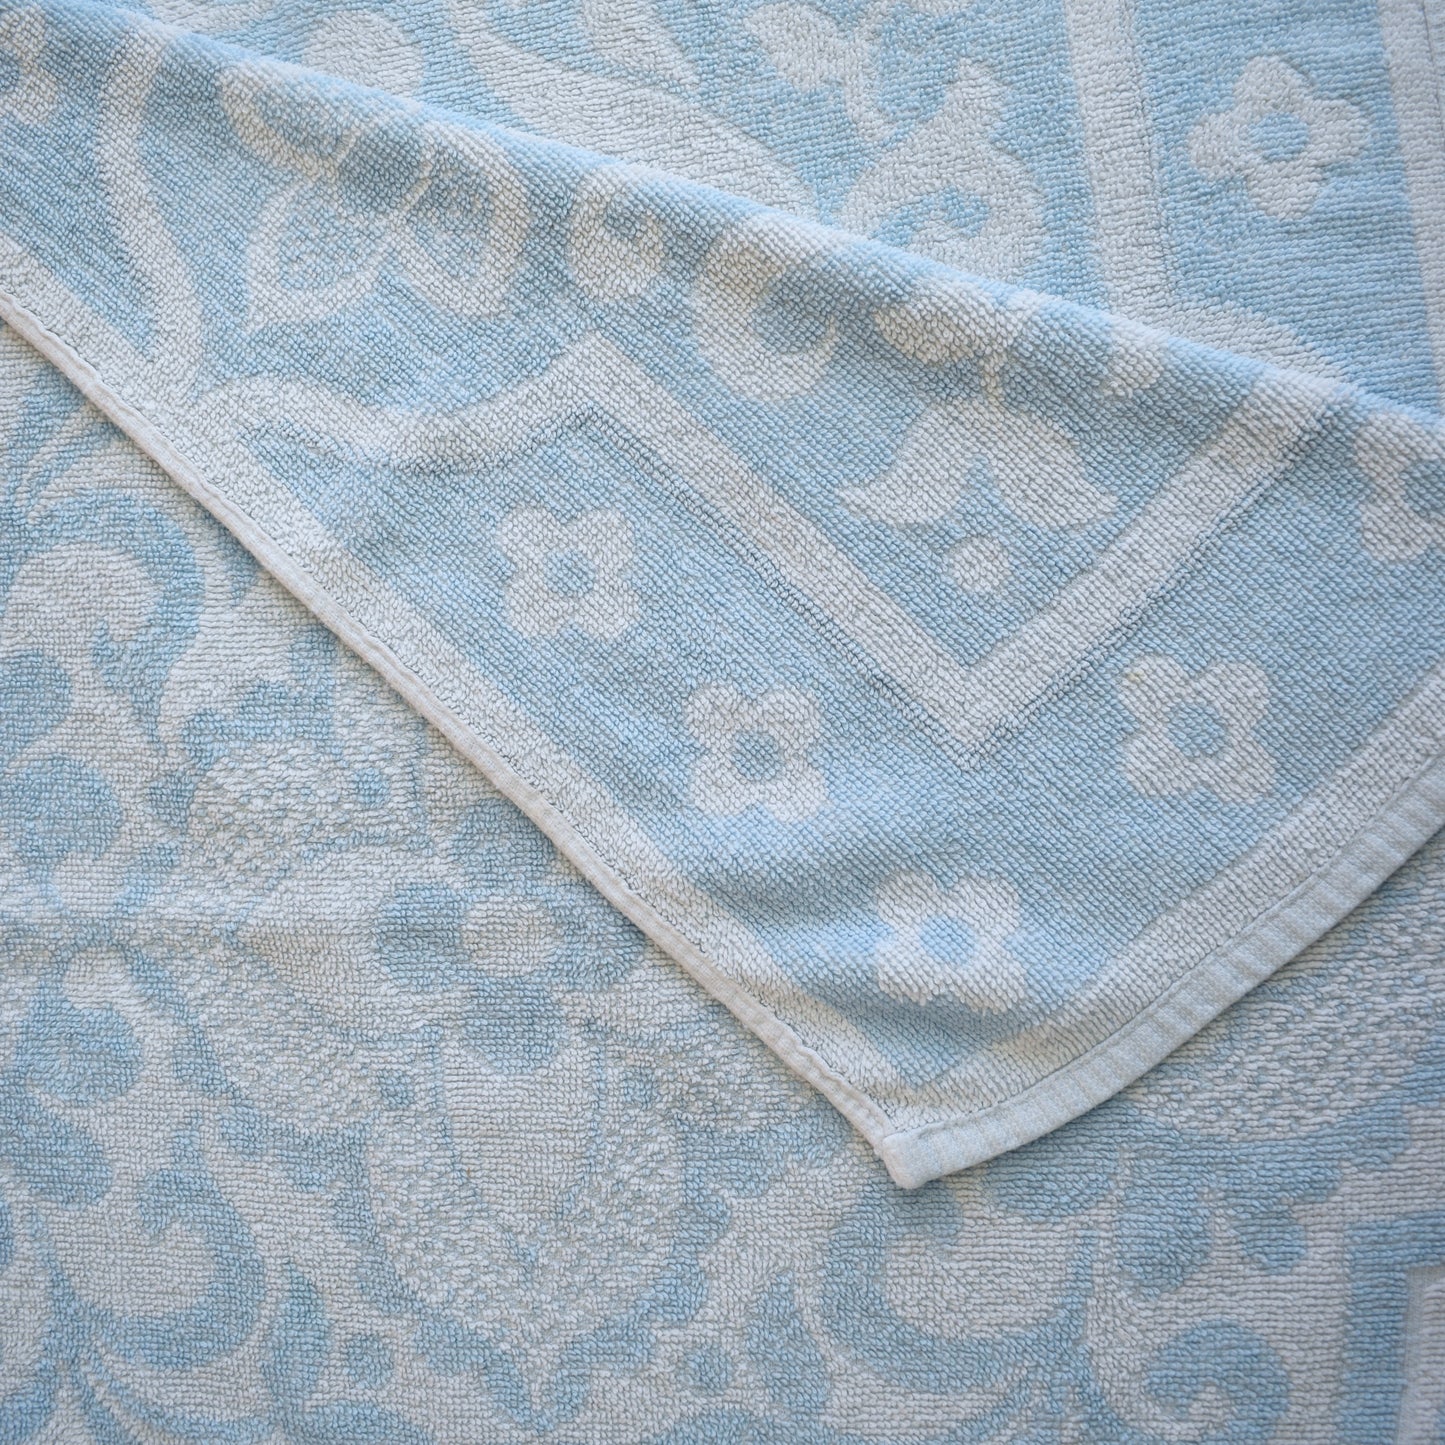 Vintage 1960s Cotton Bath Towel - Pale Blue